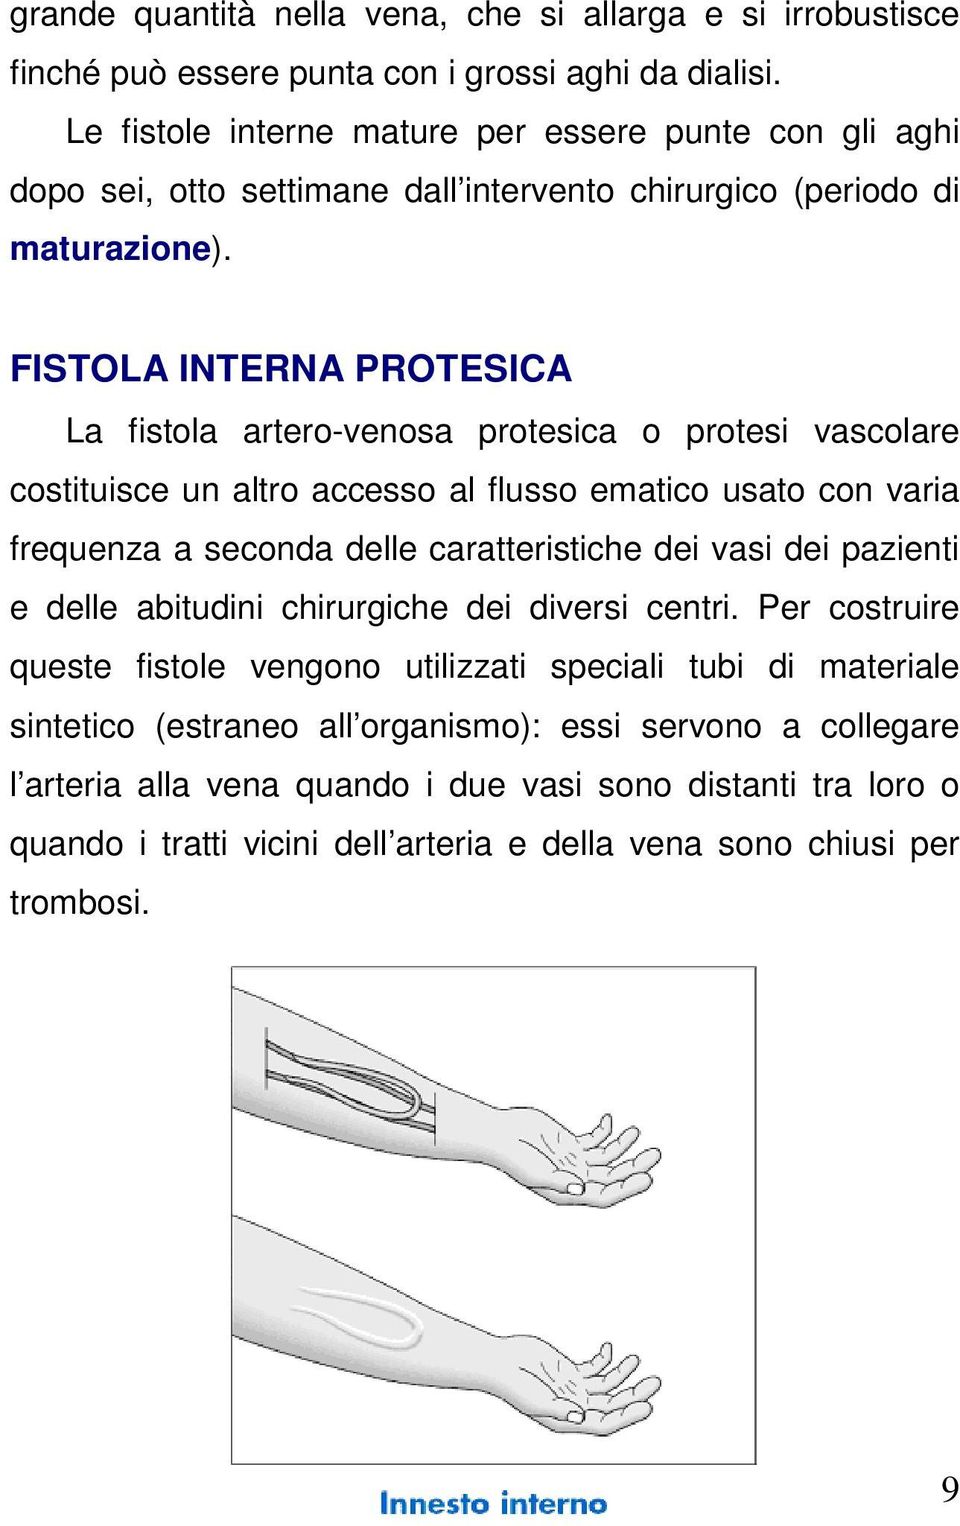 FISTOLA INTERNA PROTESICA La fistola artero-venosa protesica o protesi vascolare costituisce un altro accesso al flusso ematico usato con varia frequenza a seconda delle caratteristiche dei vasi